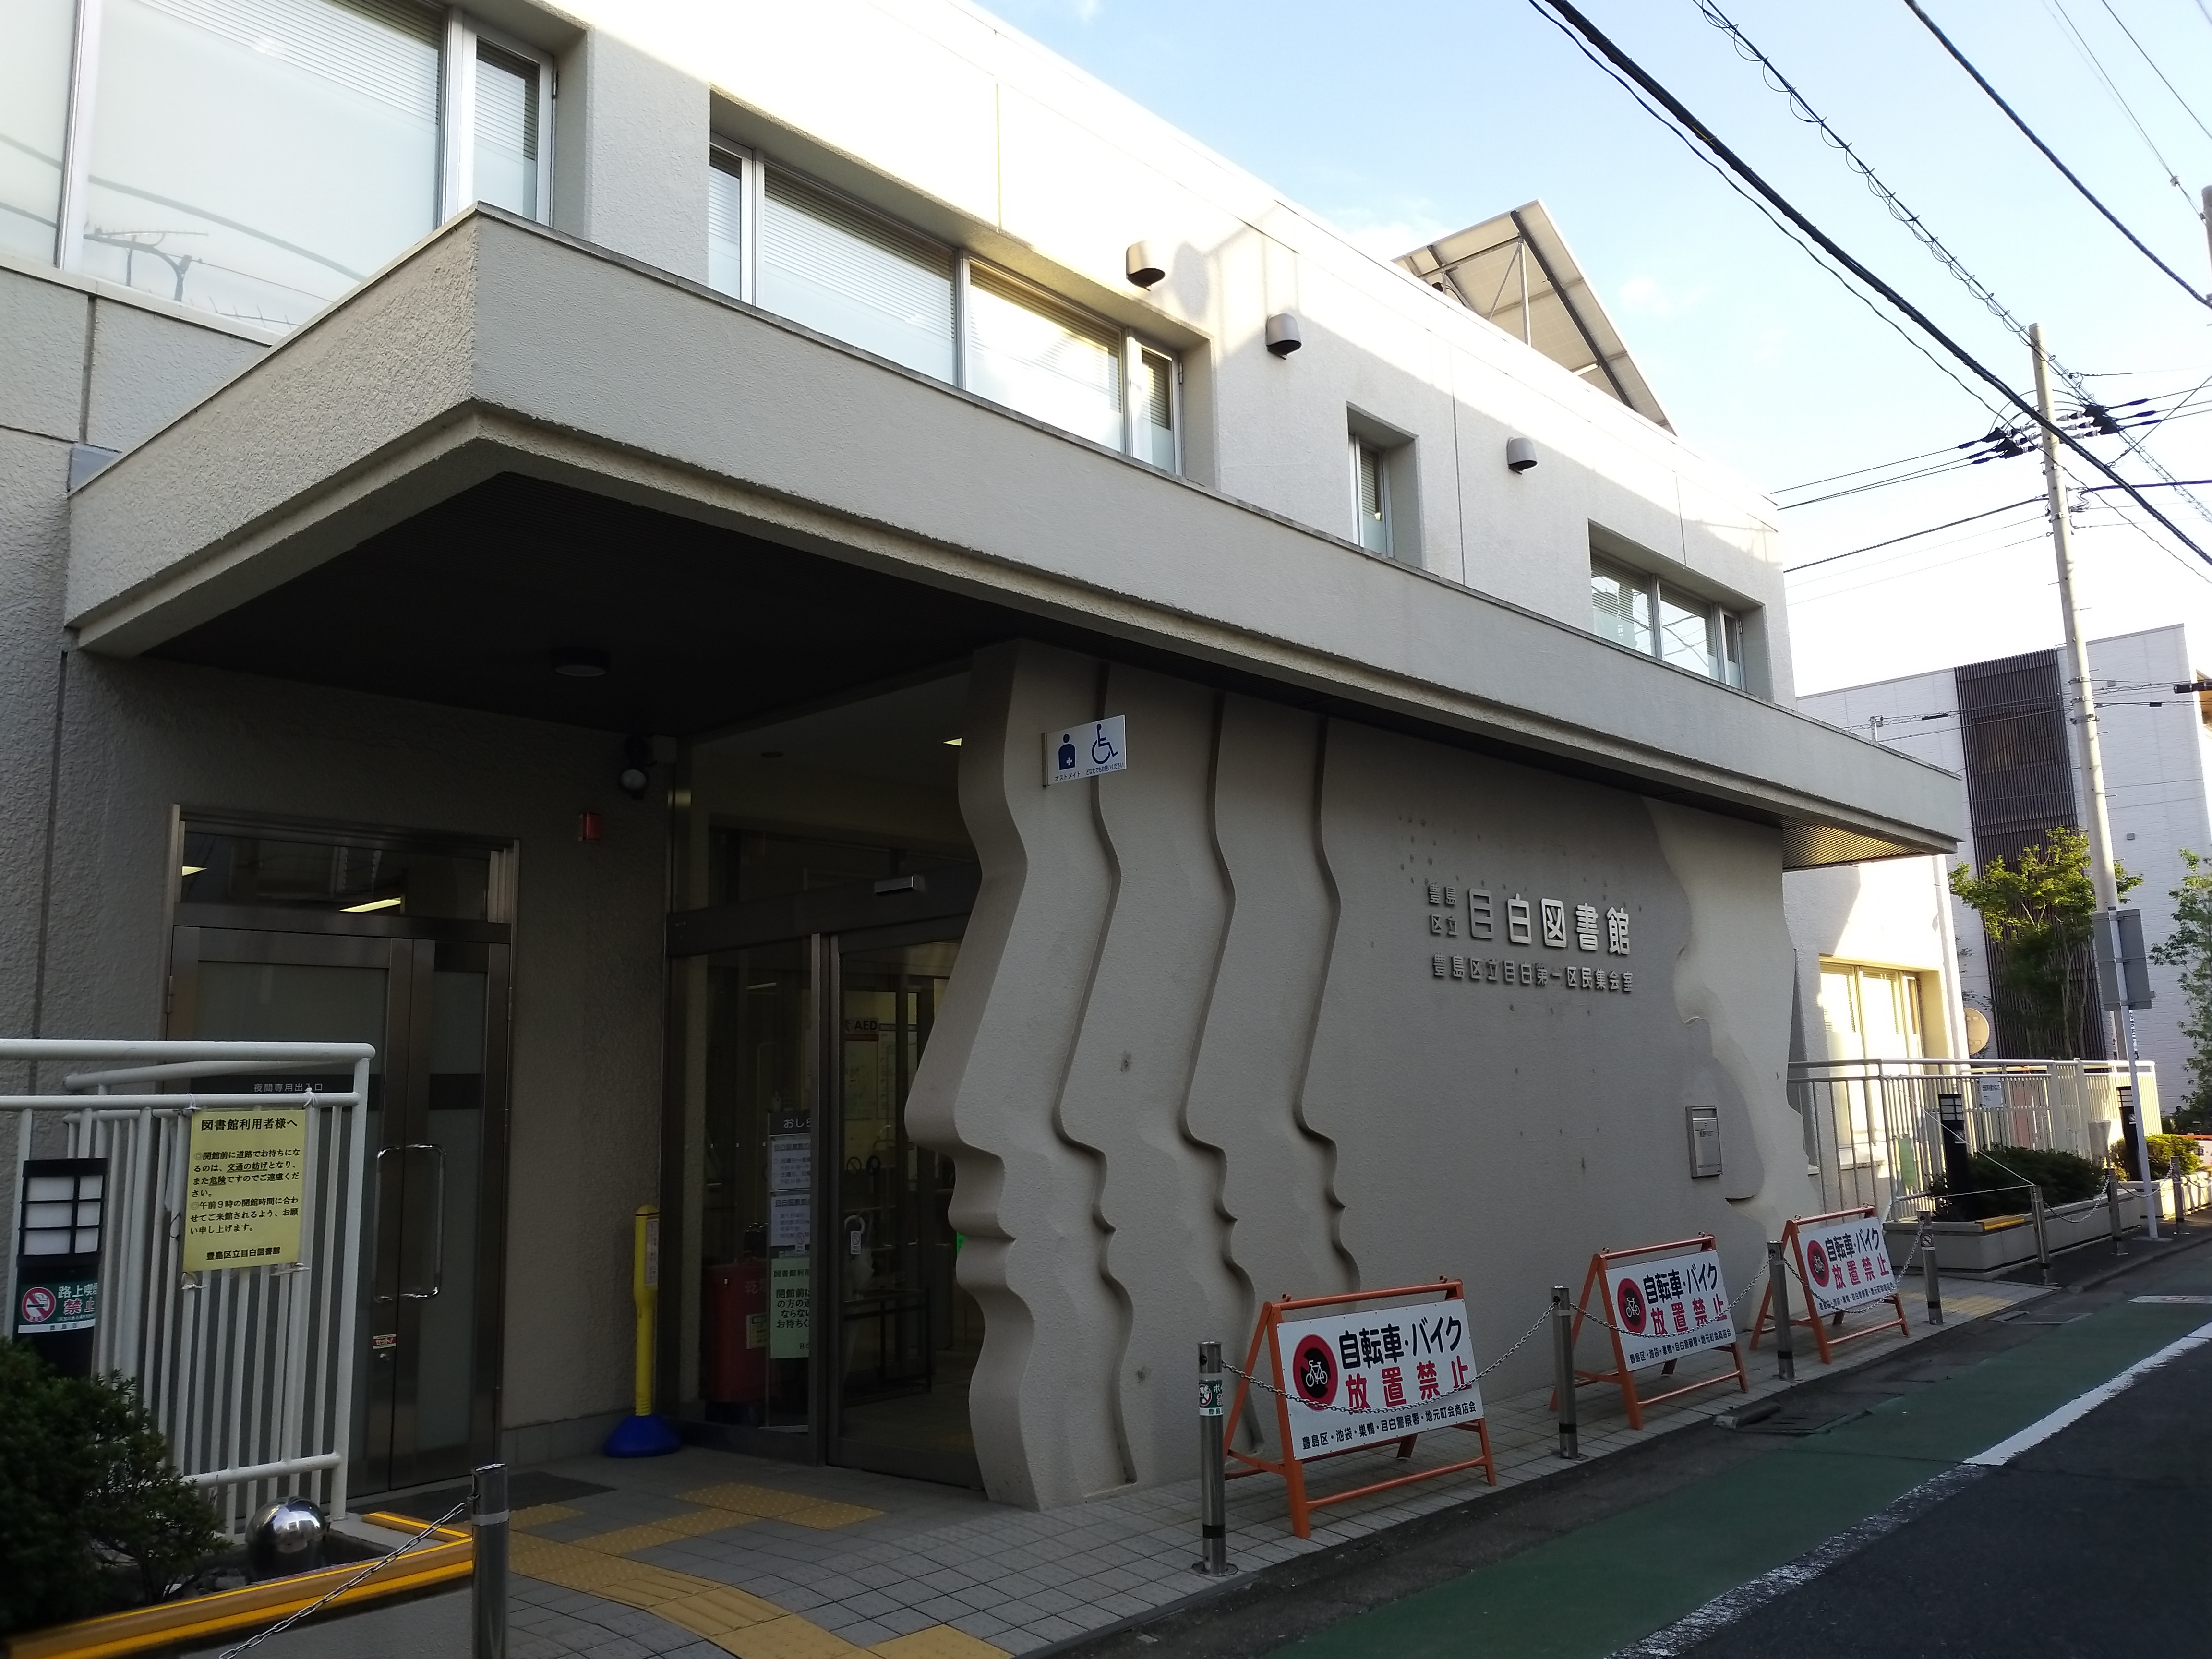 File:Toshima city Mejiro library 20181002 1607.jpg - Wikimedia Commons